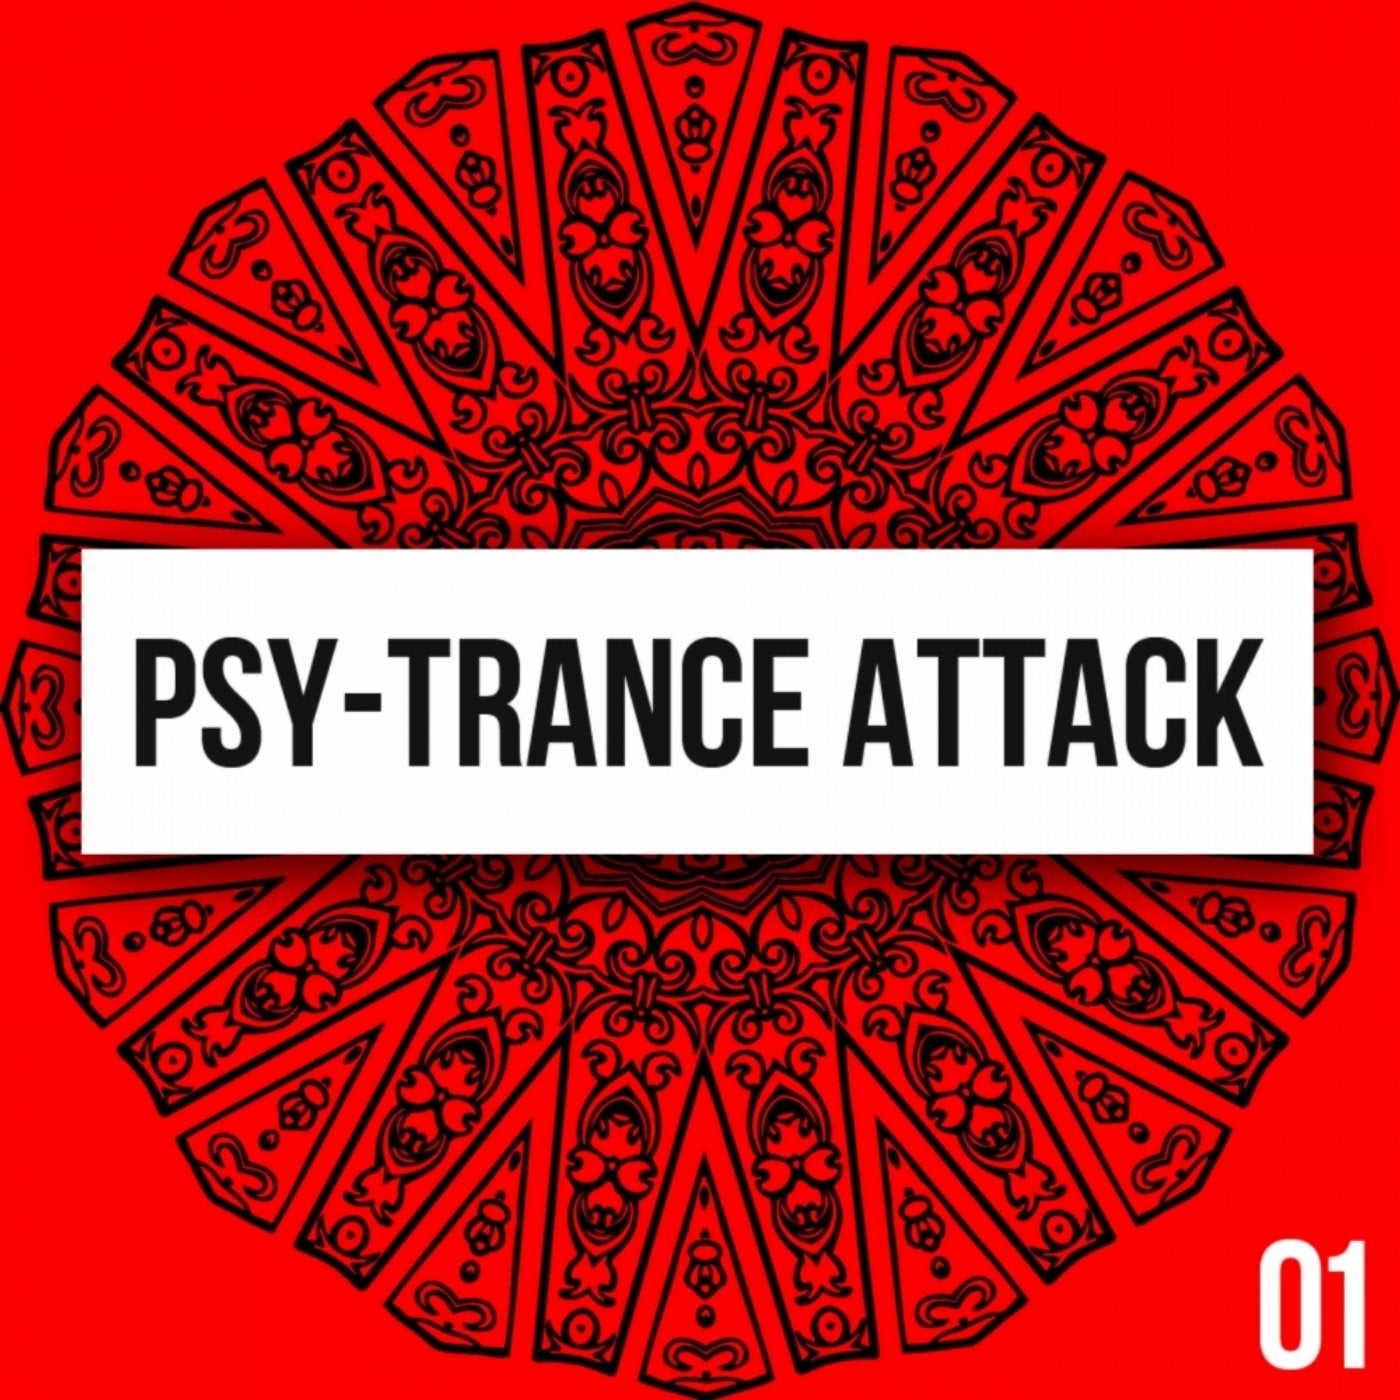 Psy-Trance Attack